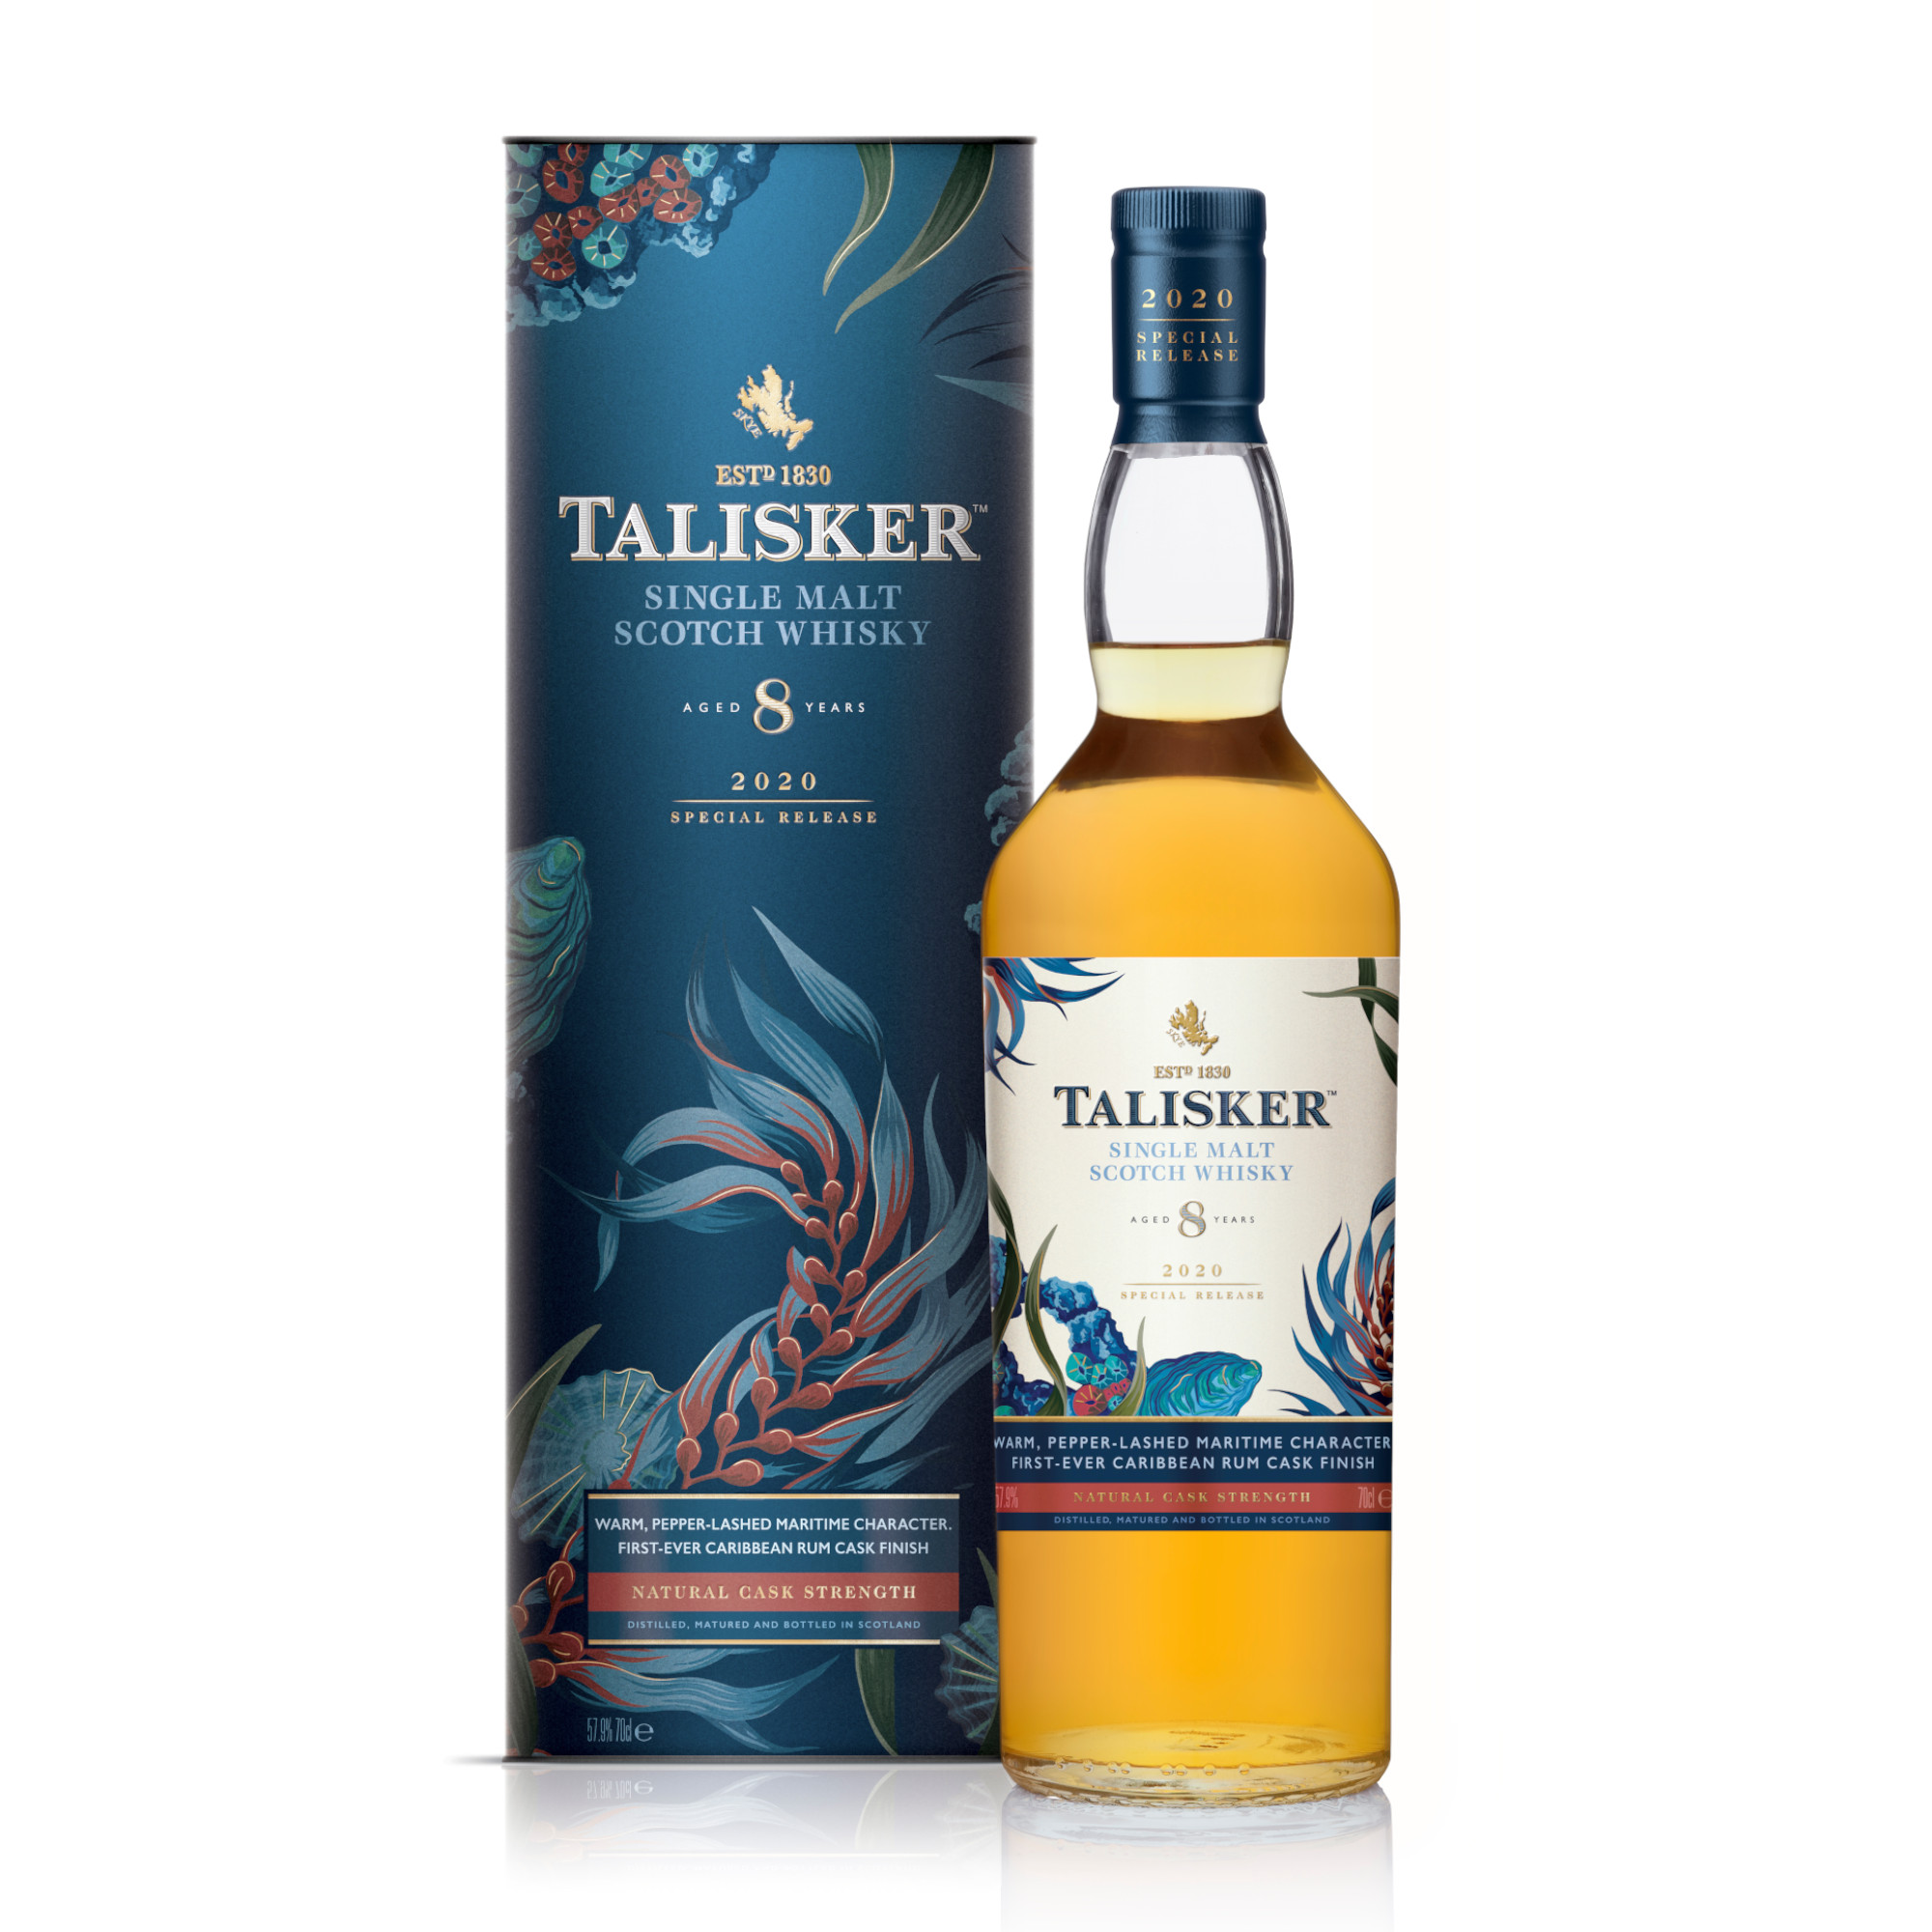 Talisker 8 Years Special Release 2020 Single Malt Scotch Whisky 57,9% 0,7l